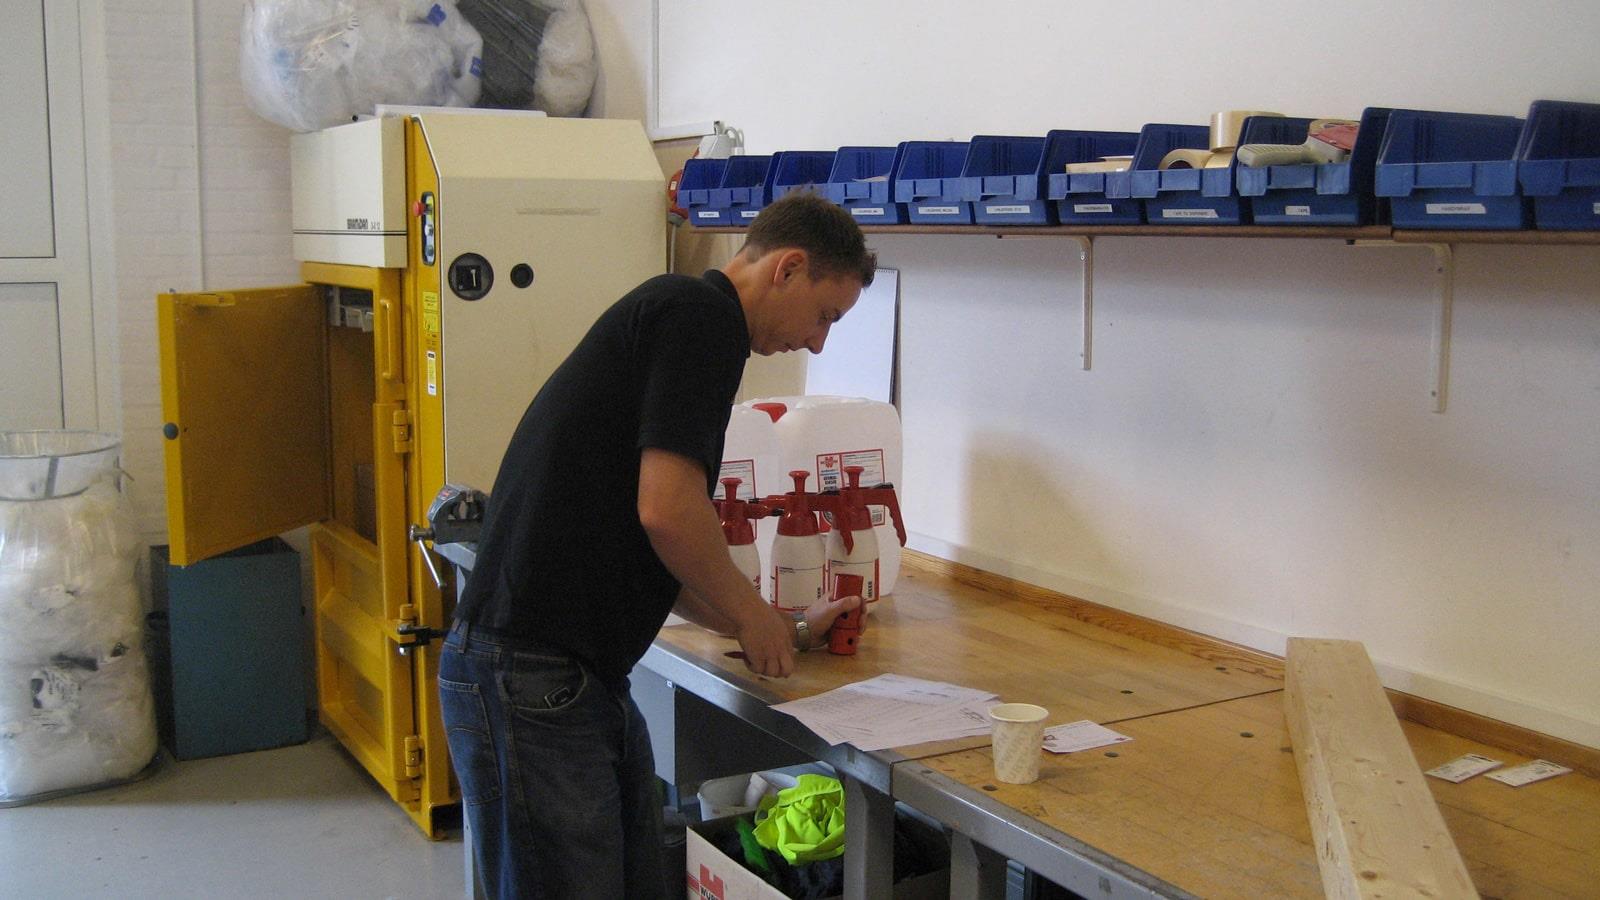 Würth employee works at packing table next to Bramidan baler